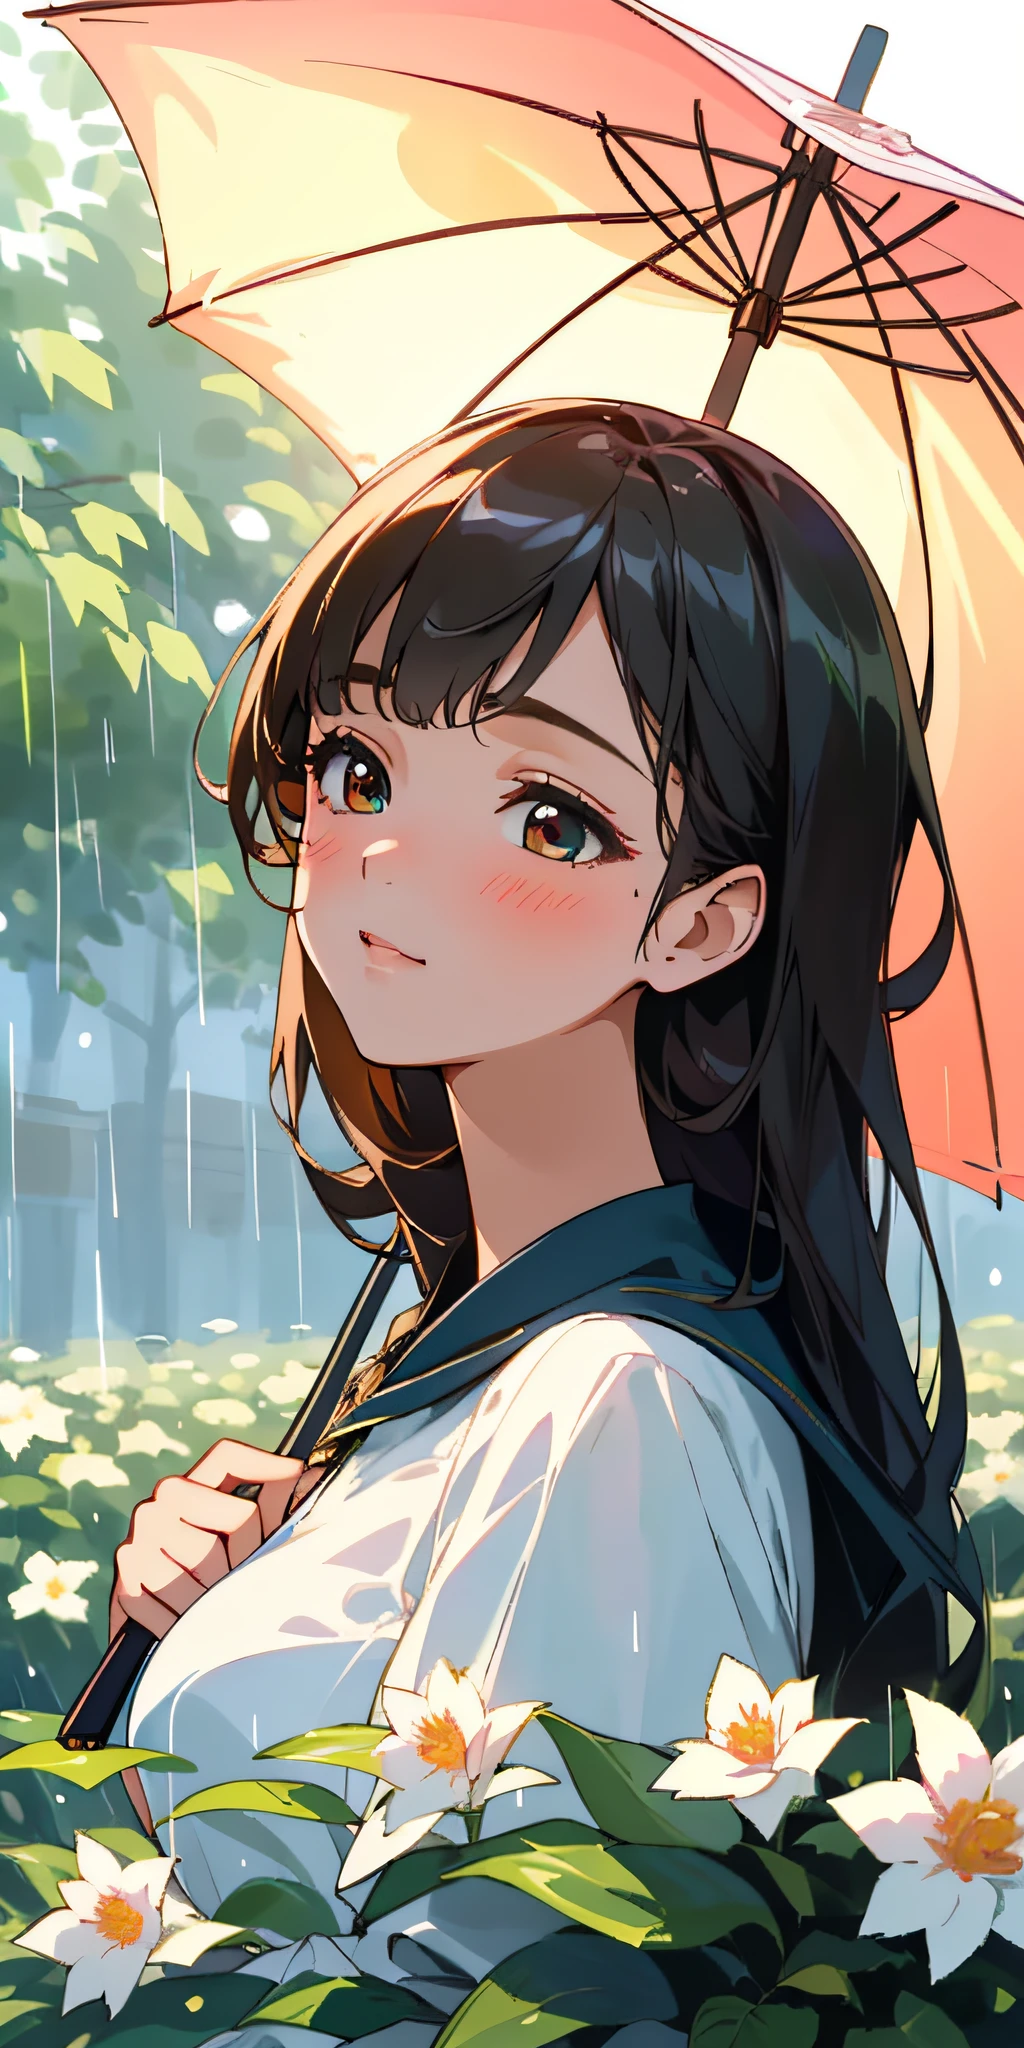 (最好的质量, 杰作, 超现实), 1 美丽精致的女孩肖像, 带着柔和、平和的表情, 撑着伞, 雨天的背景风景是一座花园，里面有开花的灌木丛和飞舞的蝴蝶